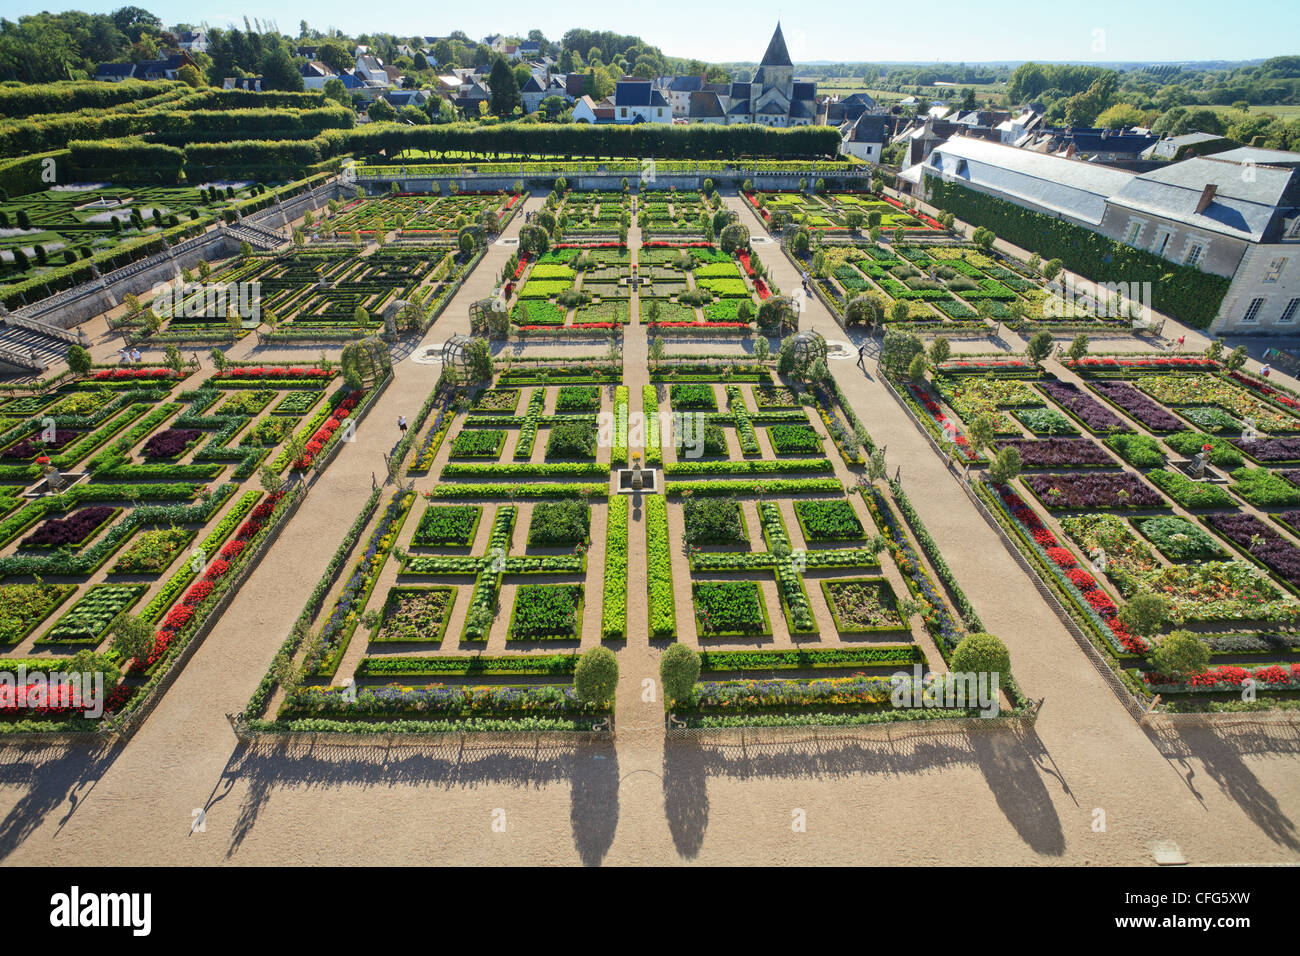 France, Gardens of Villandry castle, the kitchen garden treated like a 'jardin à la française'. Stock Photo